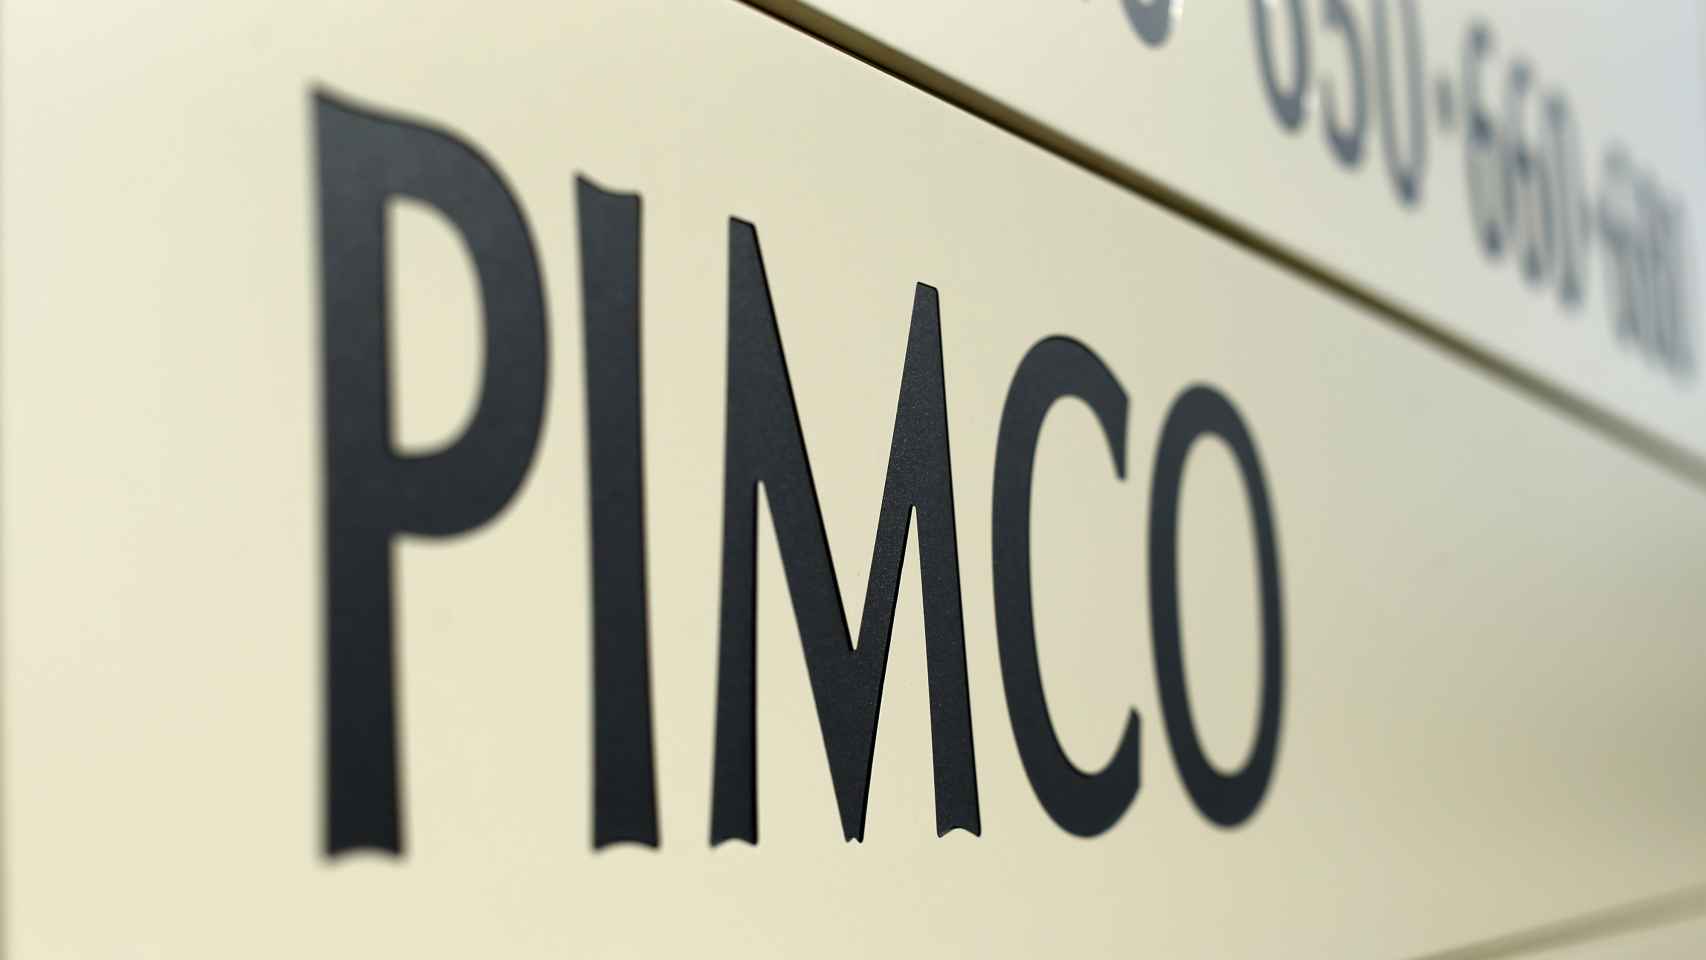 Un rótulo de Pimco en el directorio de un edificio de oficinas.